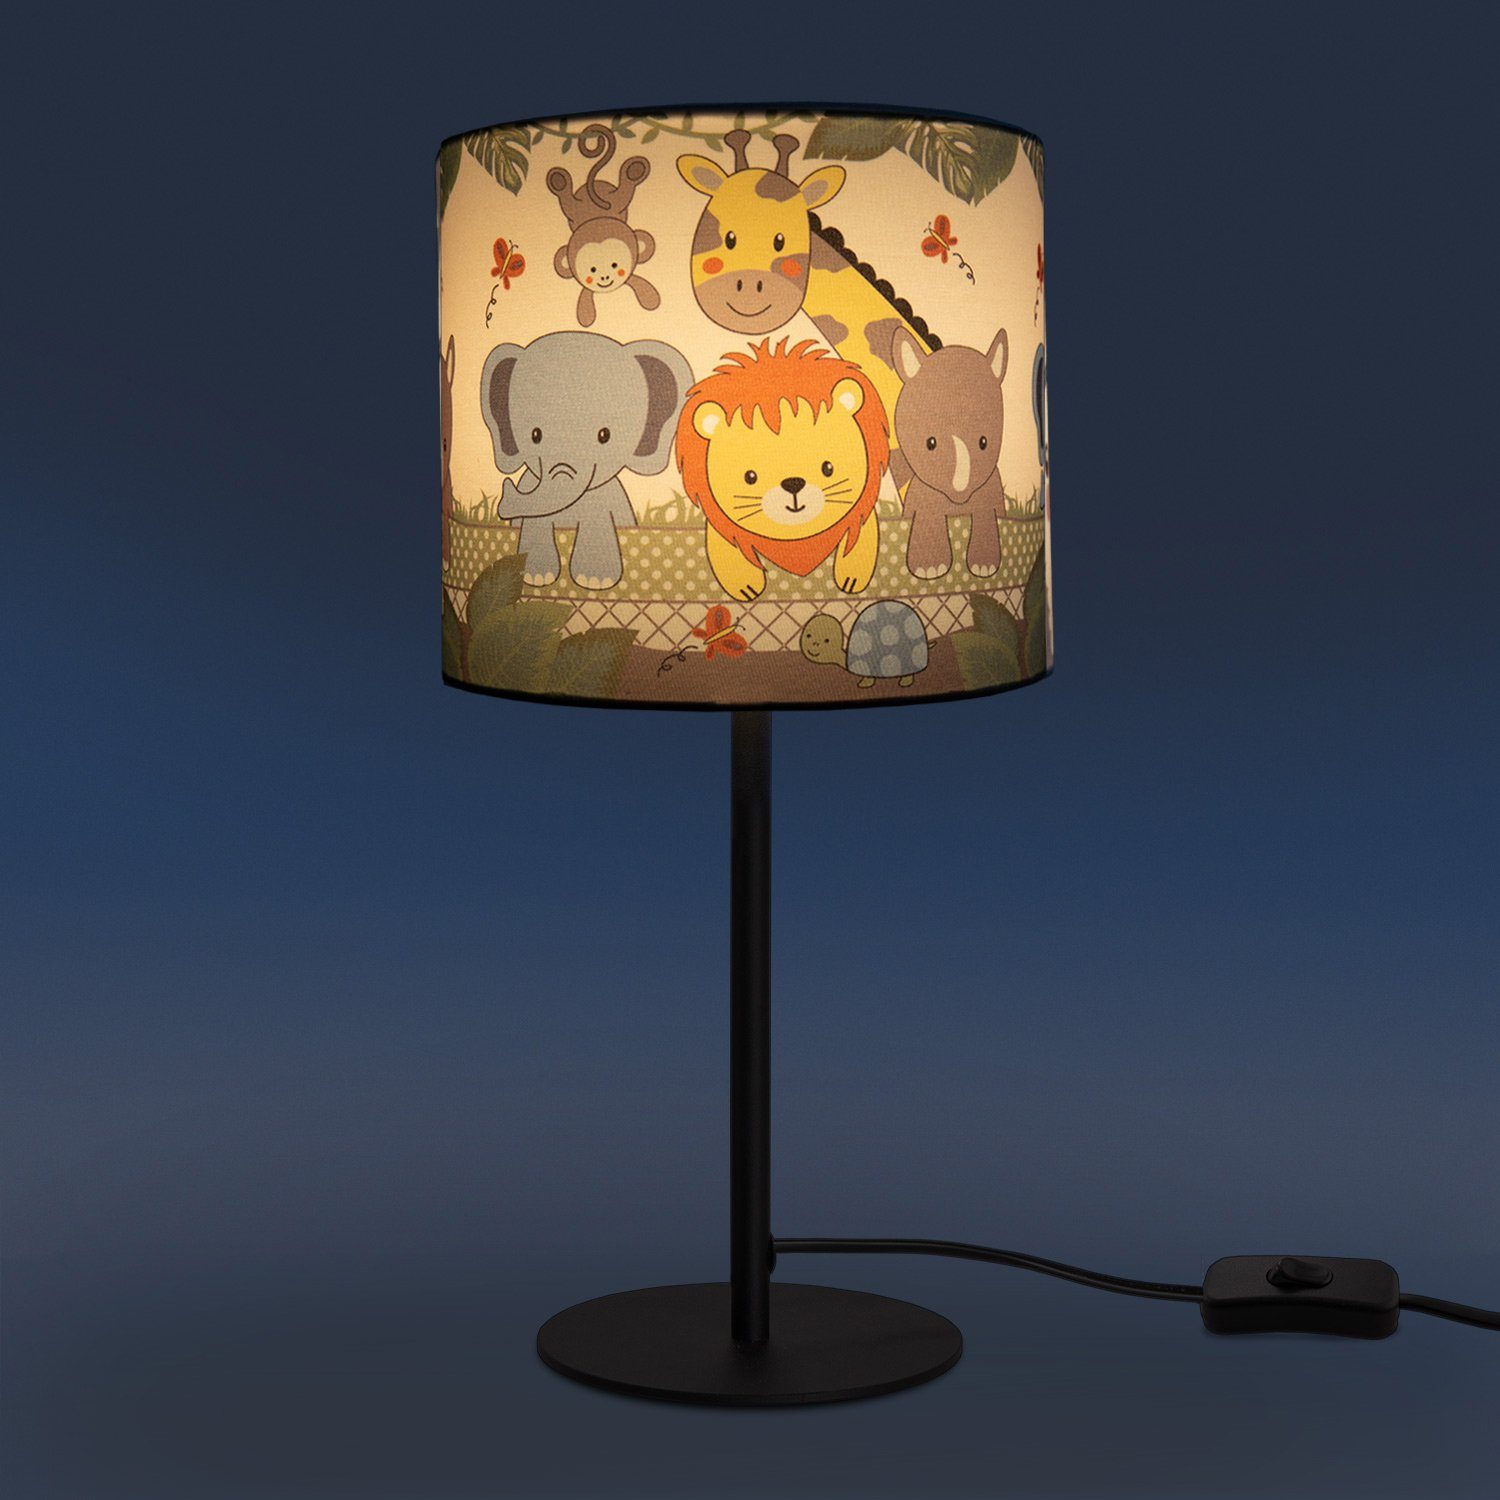 ohne Dschungel-Tiere, E14 Leuchtmittel, Kinderlampe Tischleuchte Home 634, Kinderzimmer Diamond LED Tischleuchte Lampe Paco